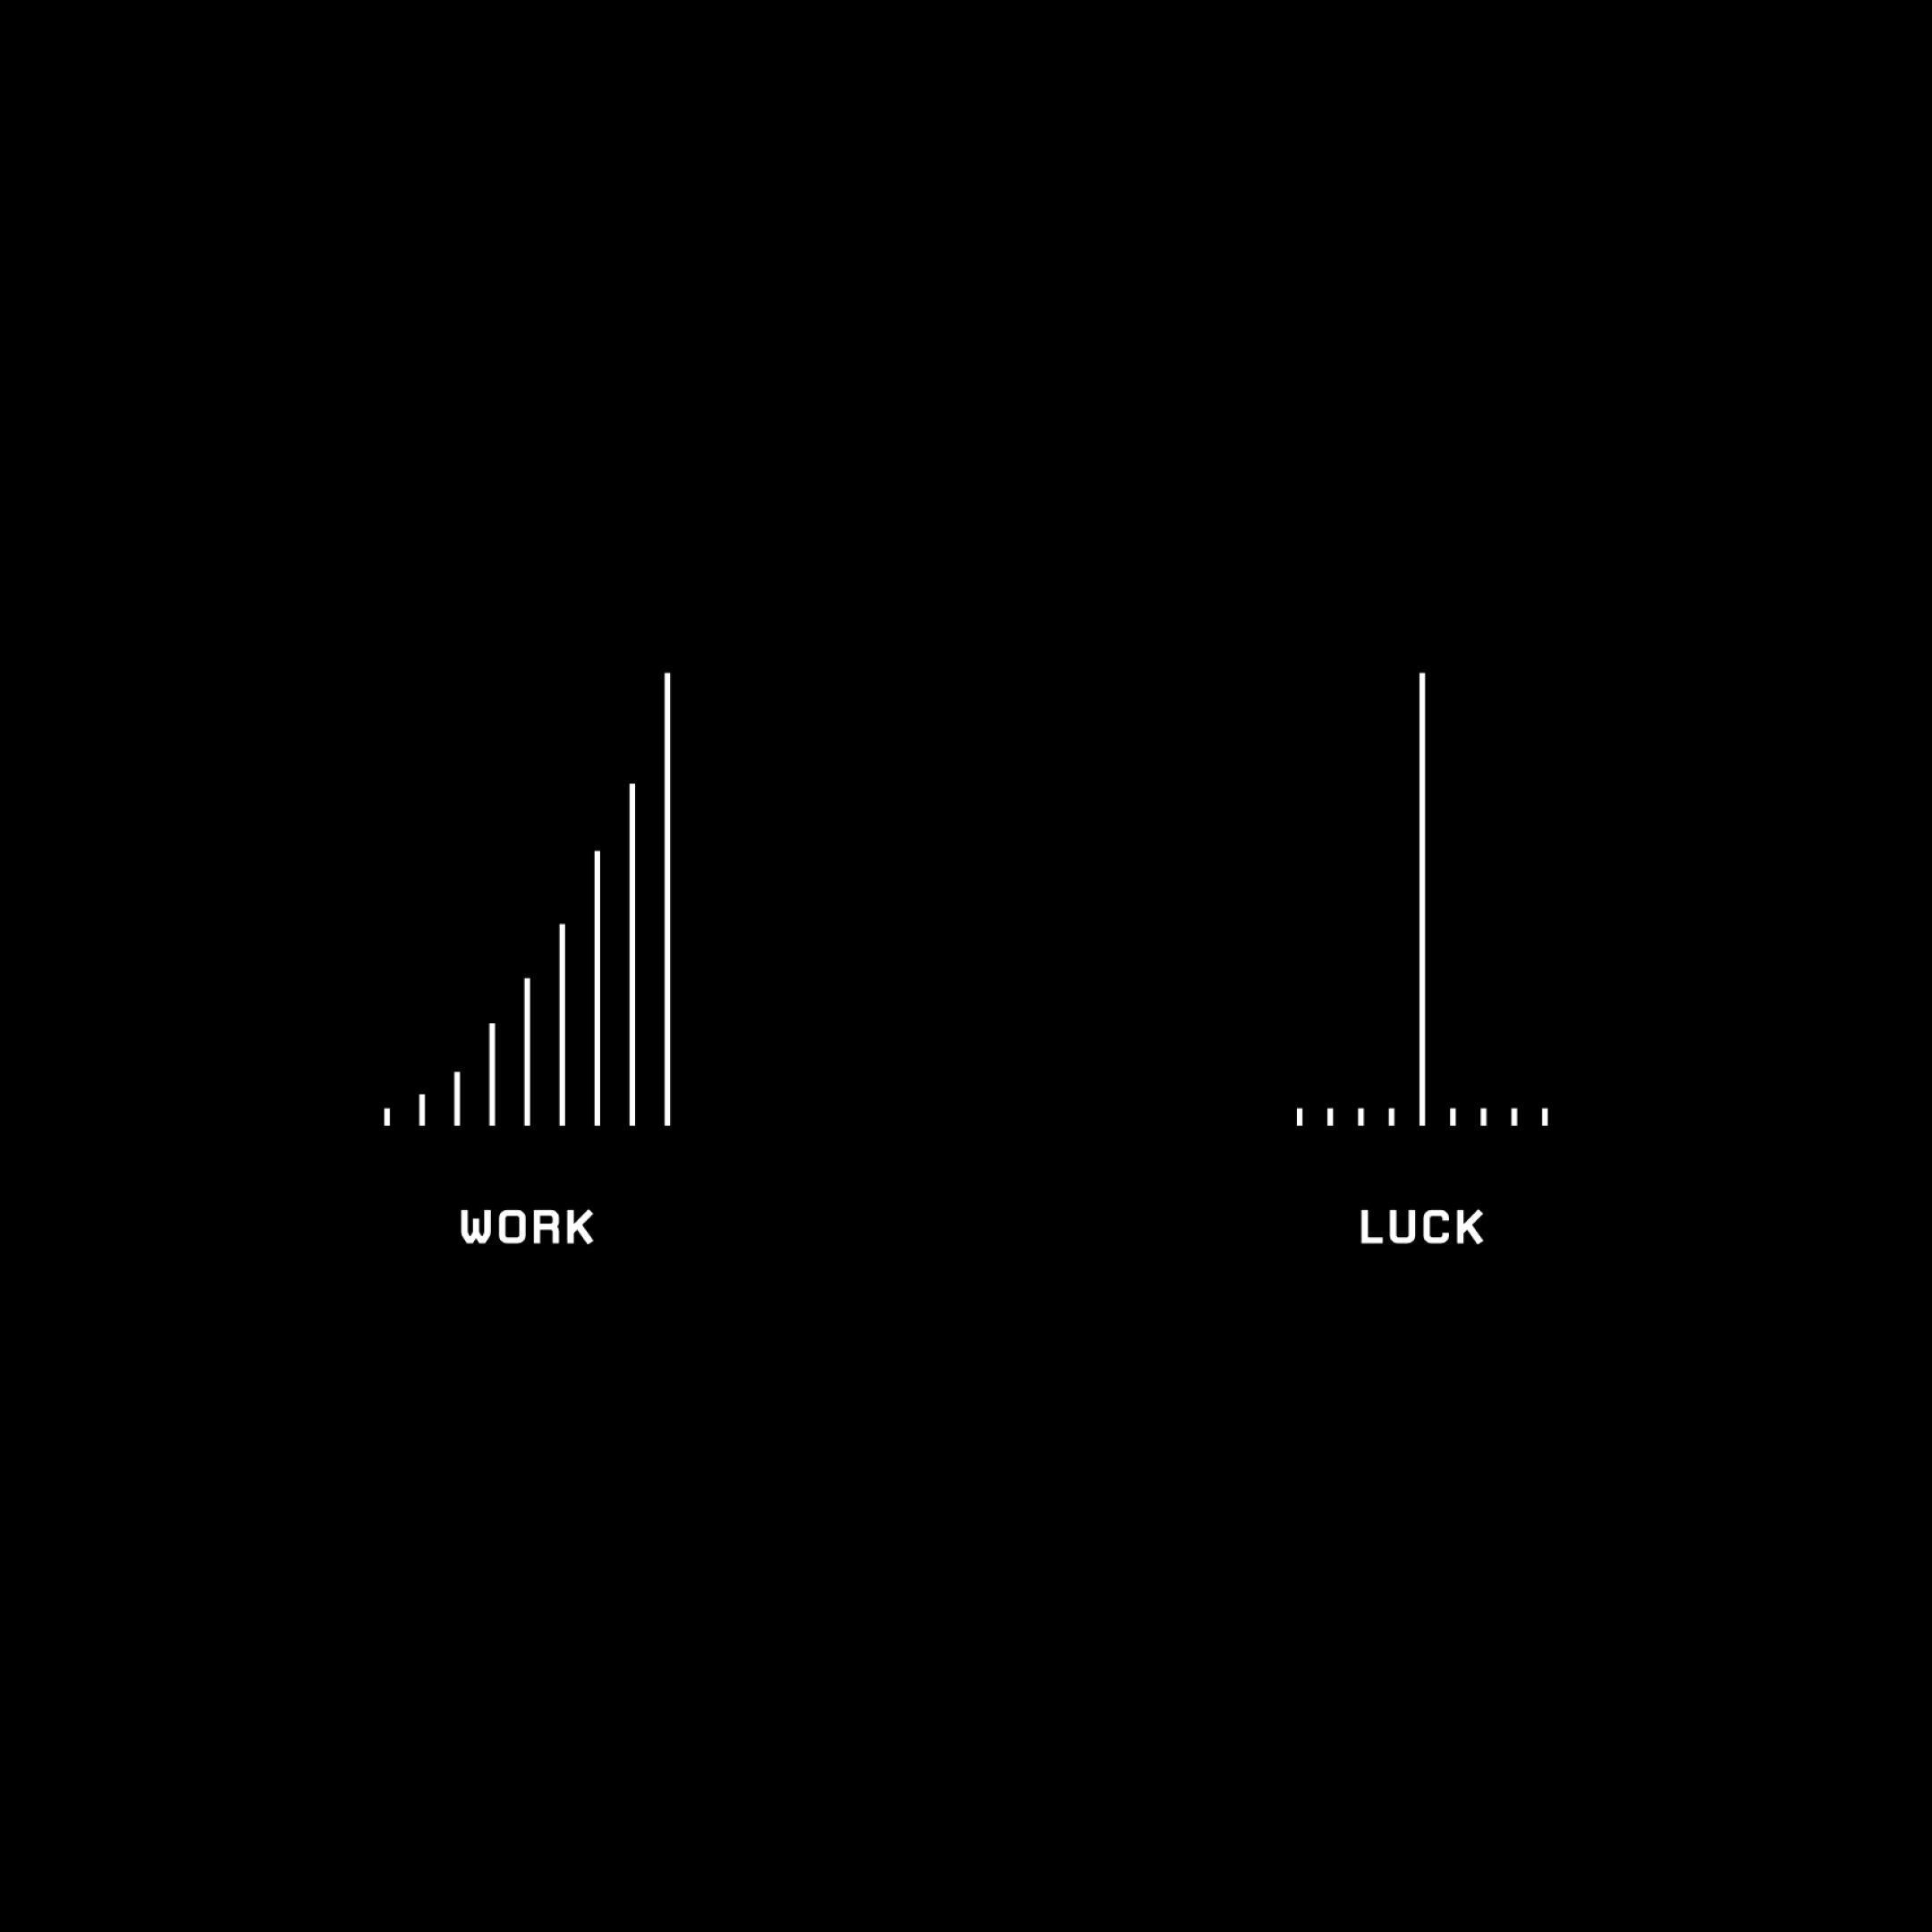 Work vs. Luck